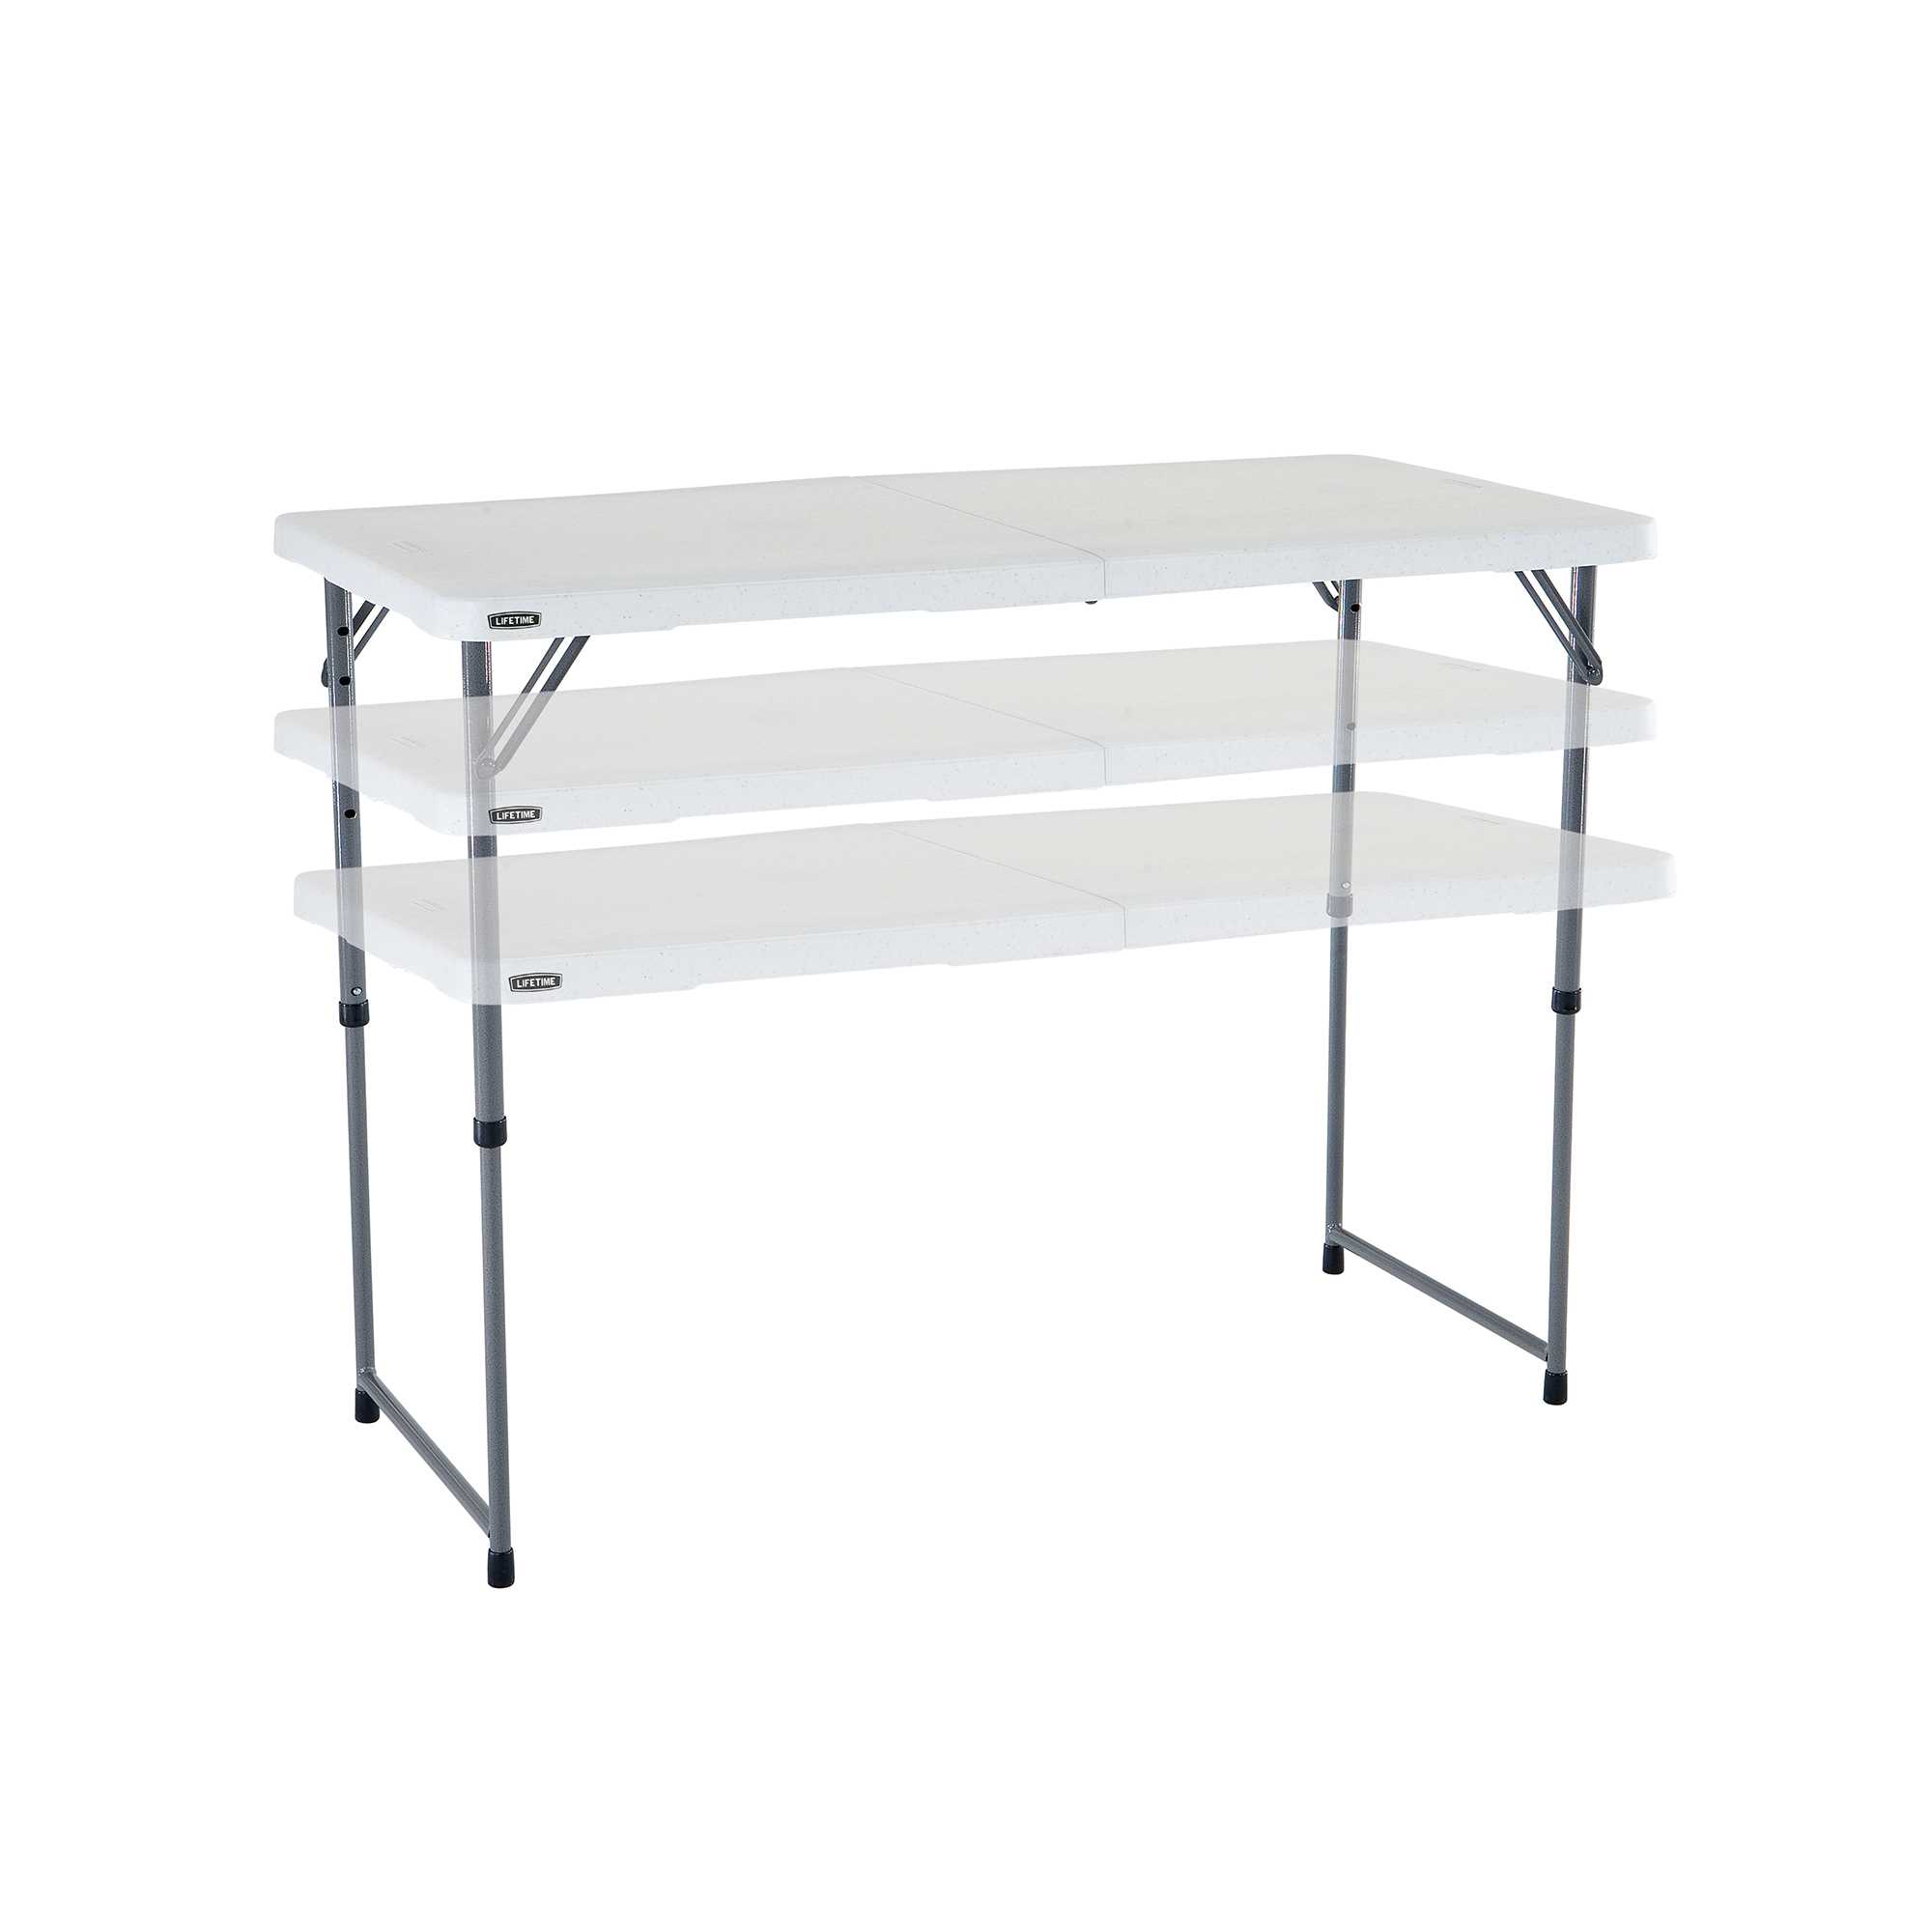 Table pliable en 2 (valise) ajustable rectangulaire (blanc) 122cm / 4 personnes